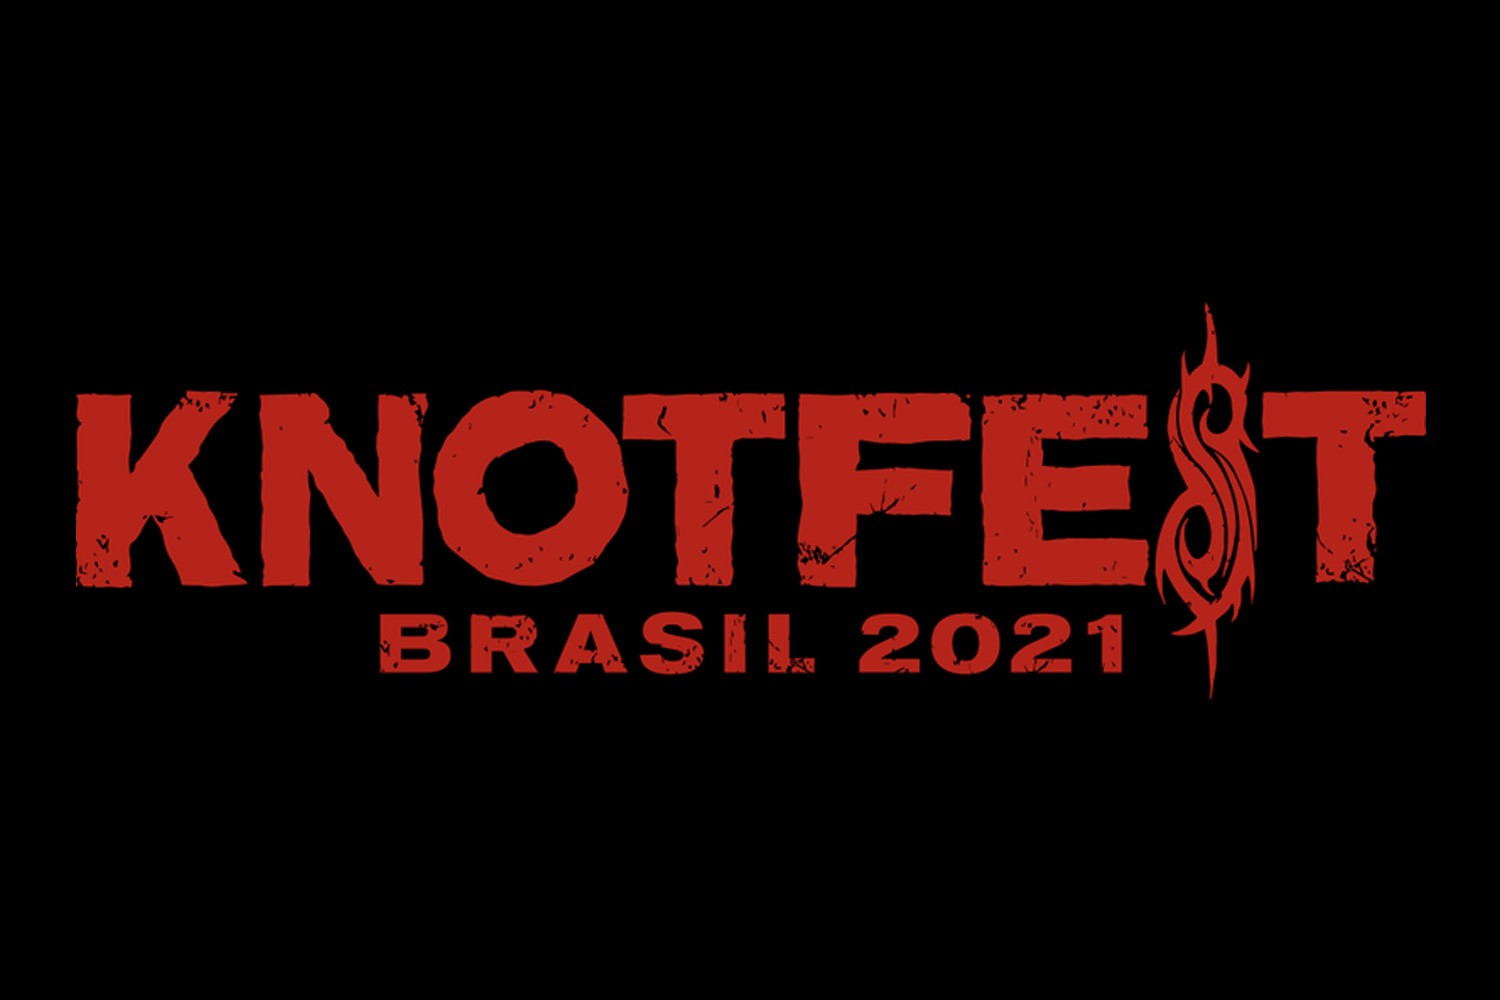 Knotfest Brasil 2021